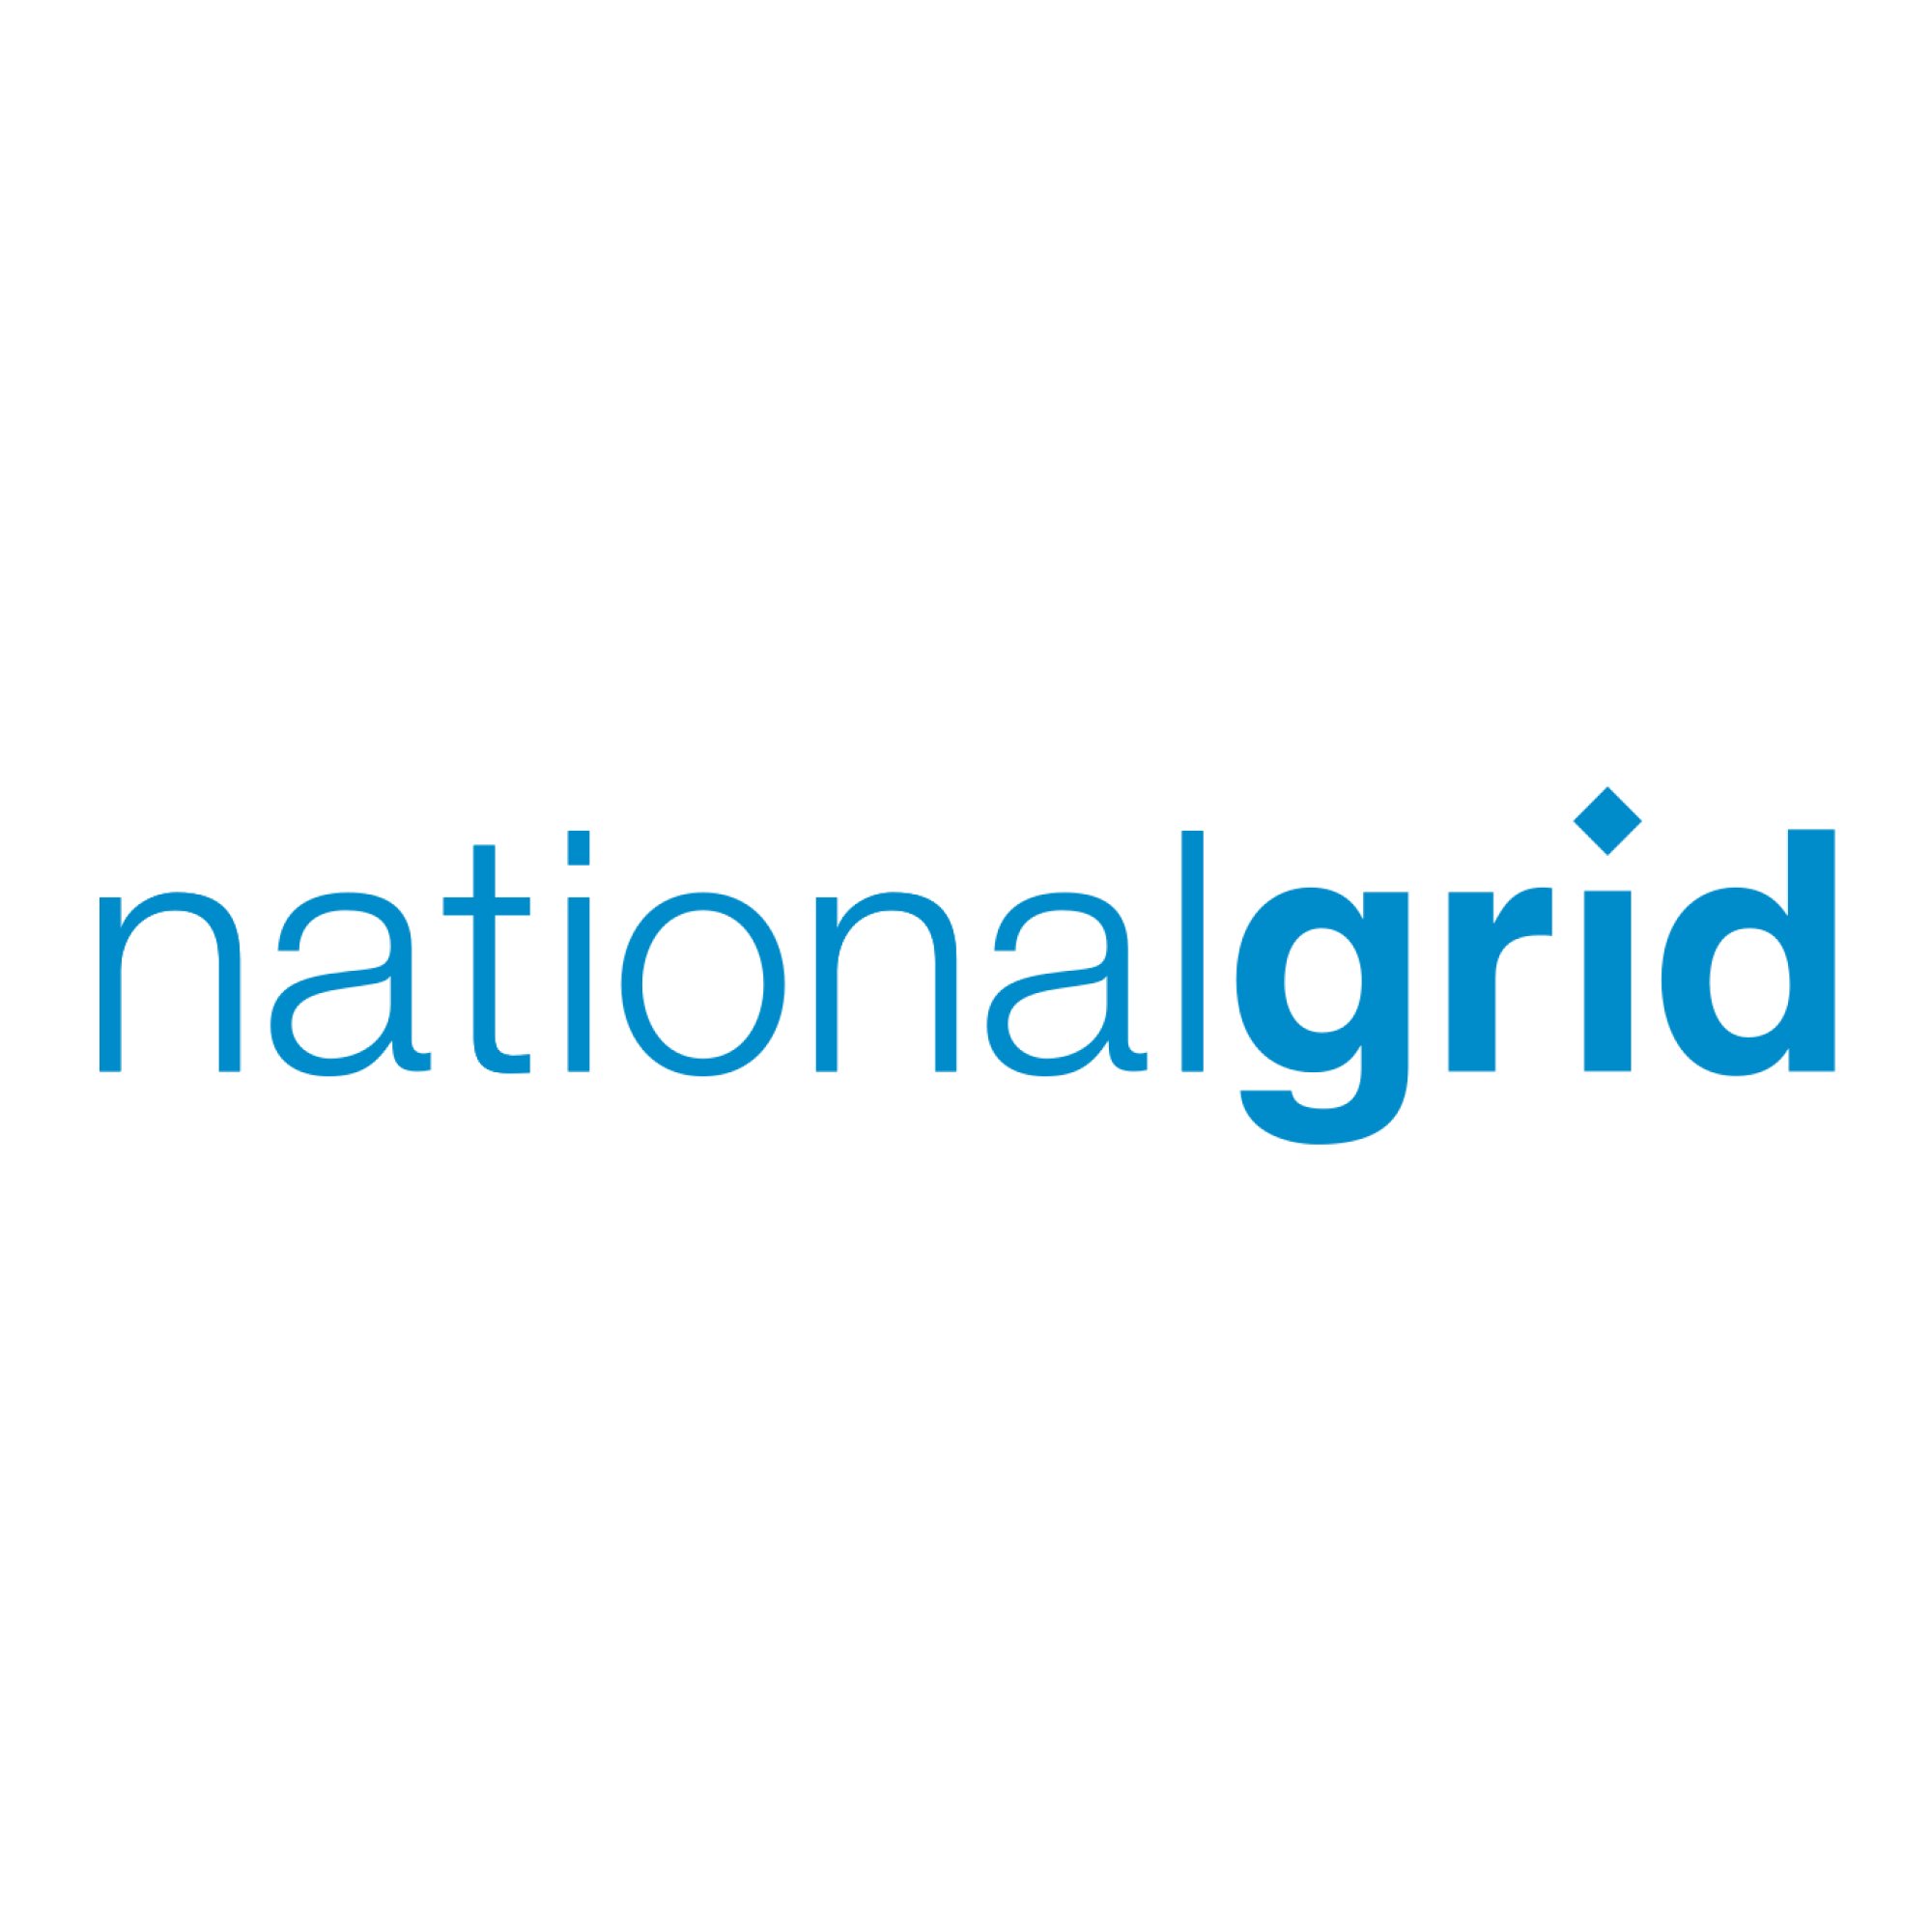 NationalGrid Logo.jpg